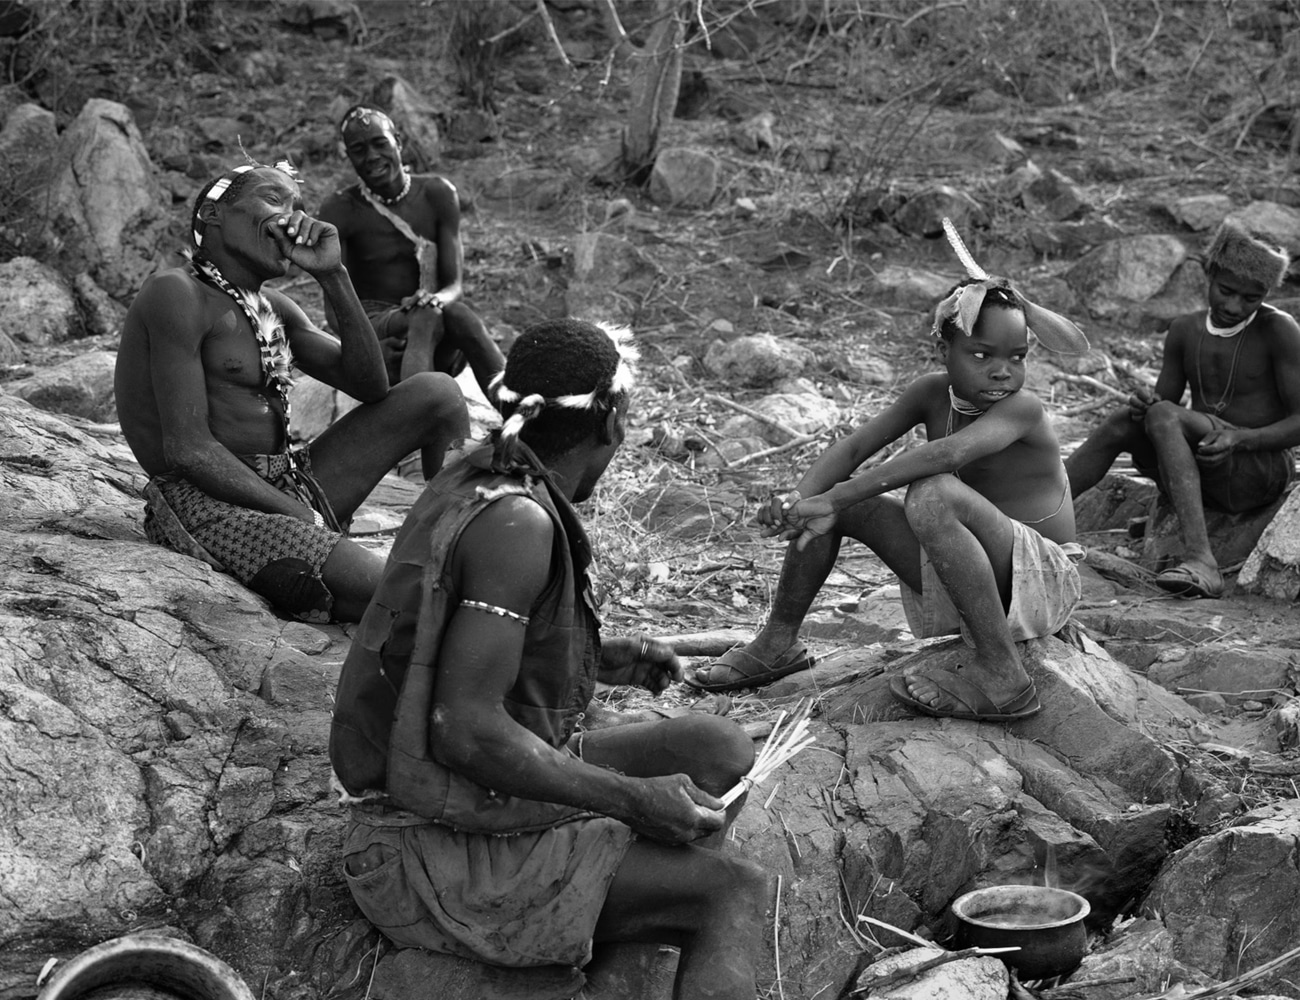 The Hadza People of Tanzania